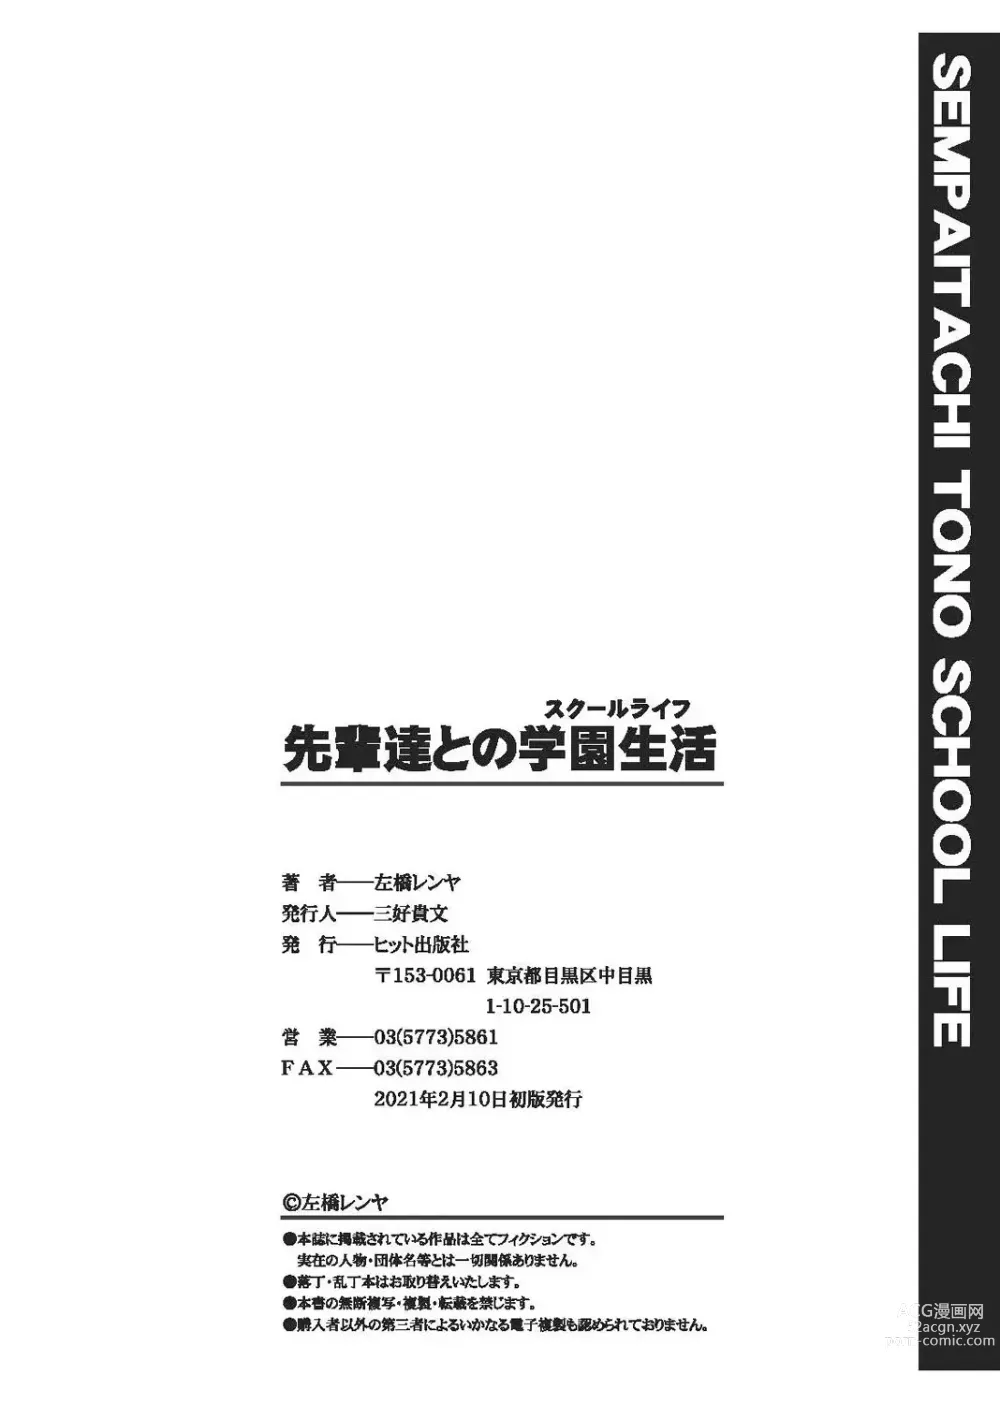 Page 199 of manga Senpai-tachi to no Gakuen Seikatsu